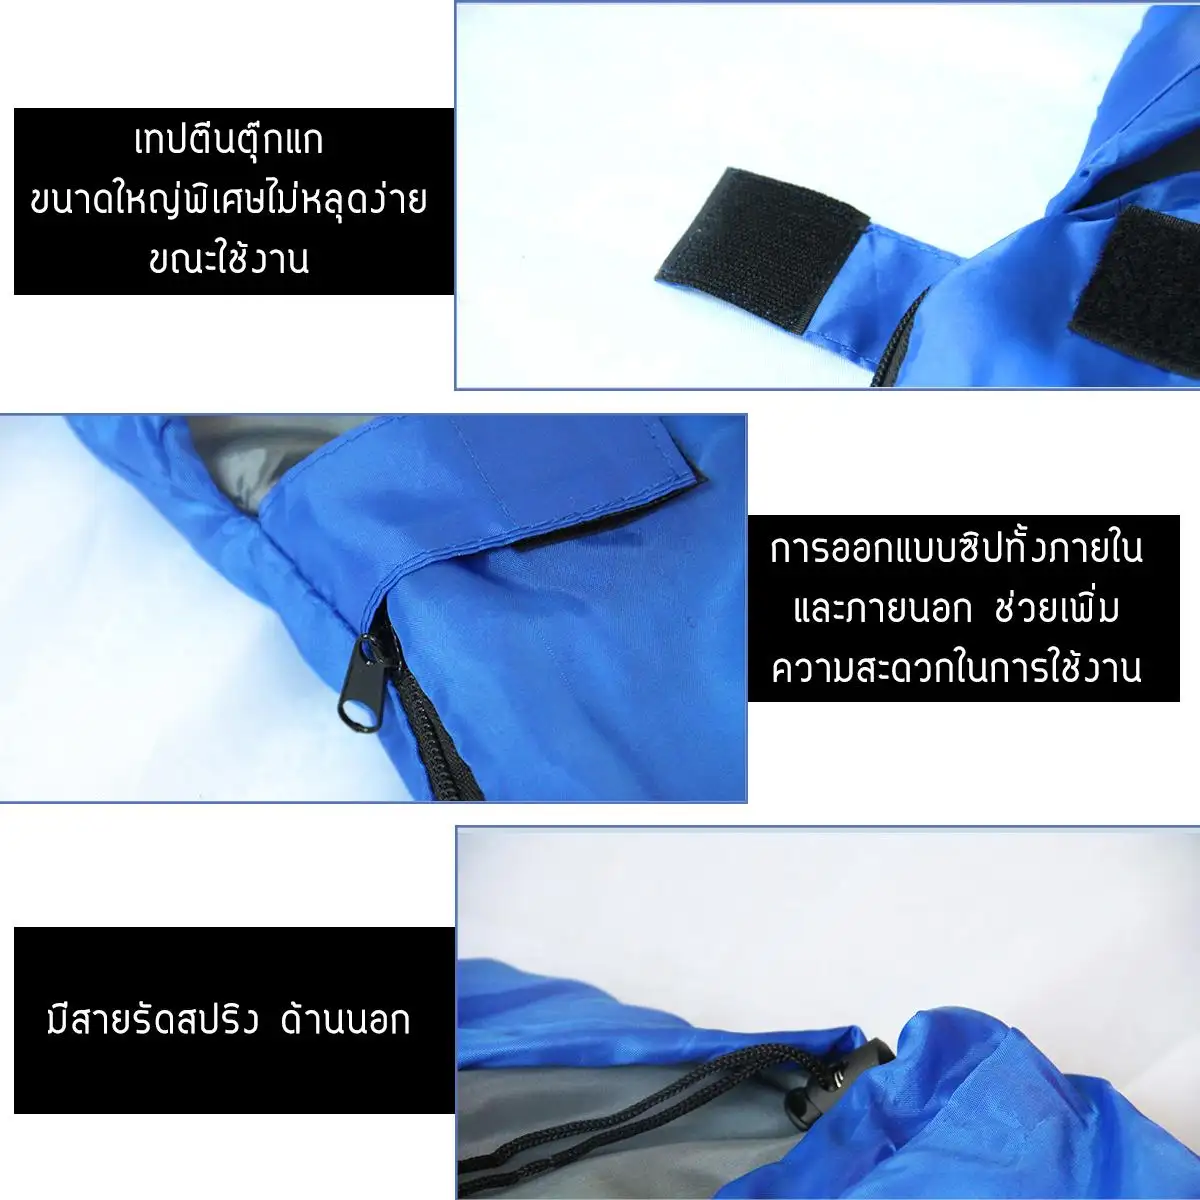 รูปภาพเพิ่มเติมเกี่ยวกับ BBT ถุงนอนแบบพกพา ถุงนอนปิกนิก Sleeping bag ขนาดกระทัดรัด น้ำหนักเบา พกพาไปได้ทุกที่ SB-R